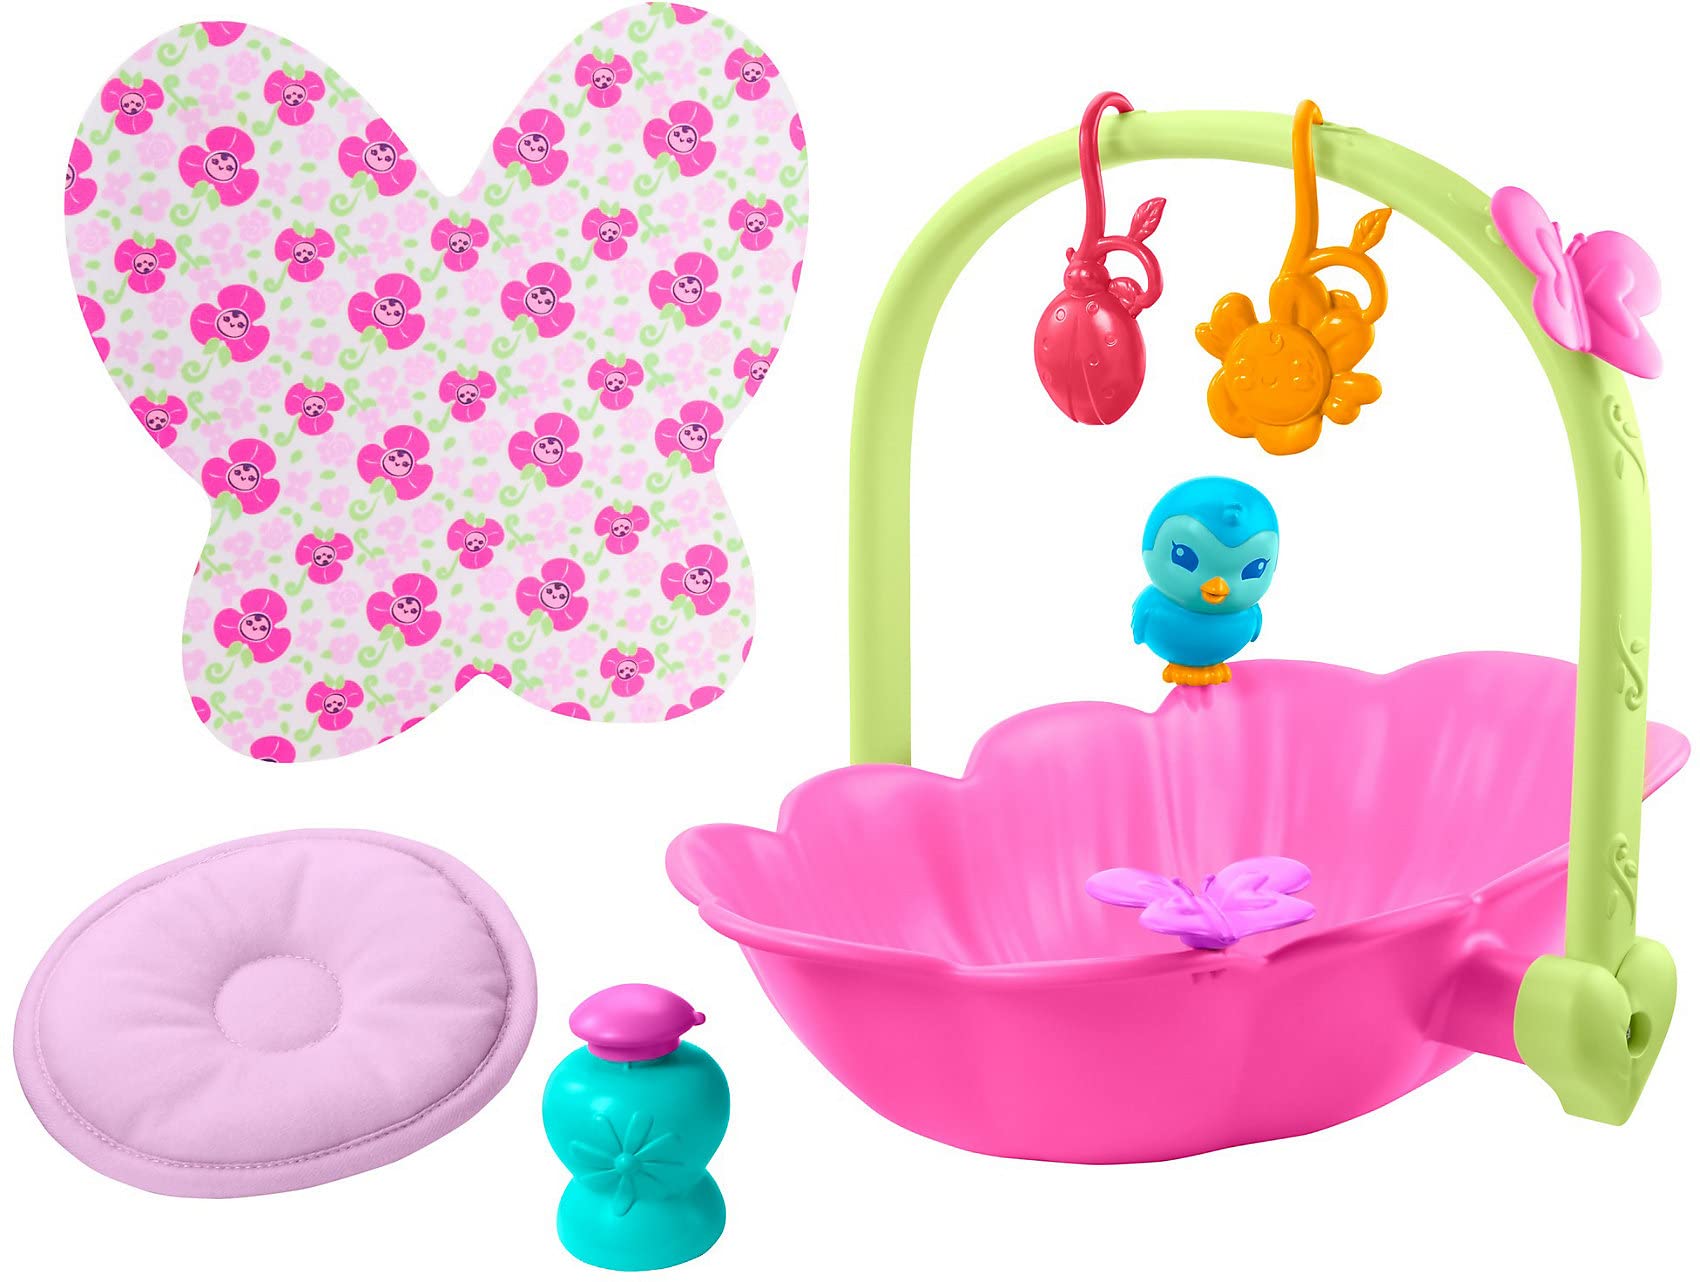 My Garden Baby HBH46 - 2-in-1 Badewanne & Bett Spielset (29,2 cm), mit Zubehörteilen wie Seife, Kissen, Mobiles und mehr, Kinderspielzeug ab 2 Jahren